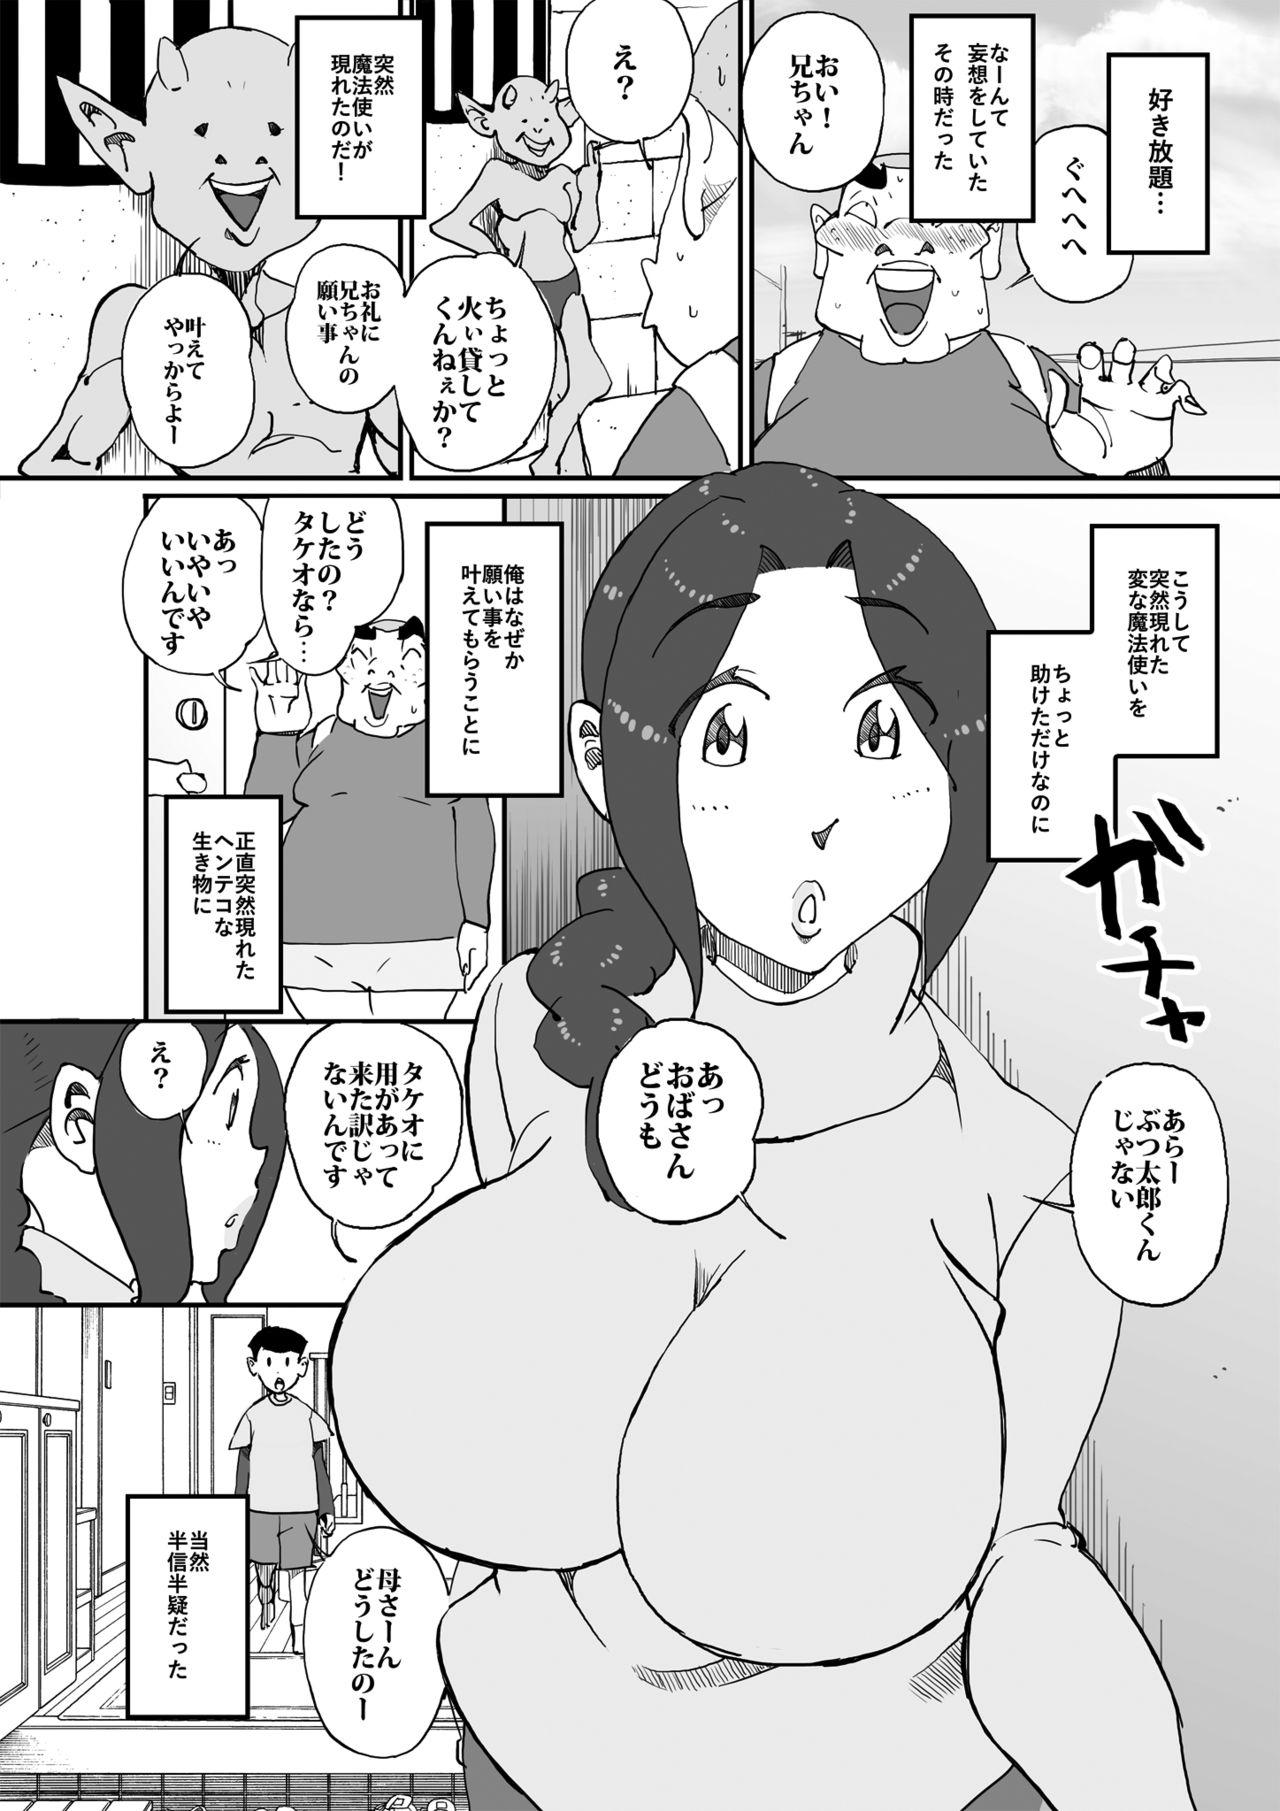 Home Aitsu no Kaachan to Yaritai・・・ - Original Nipple - Page 7